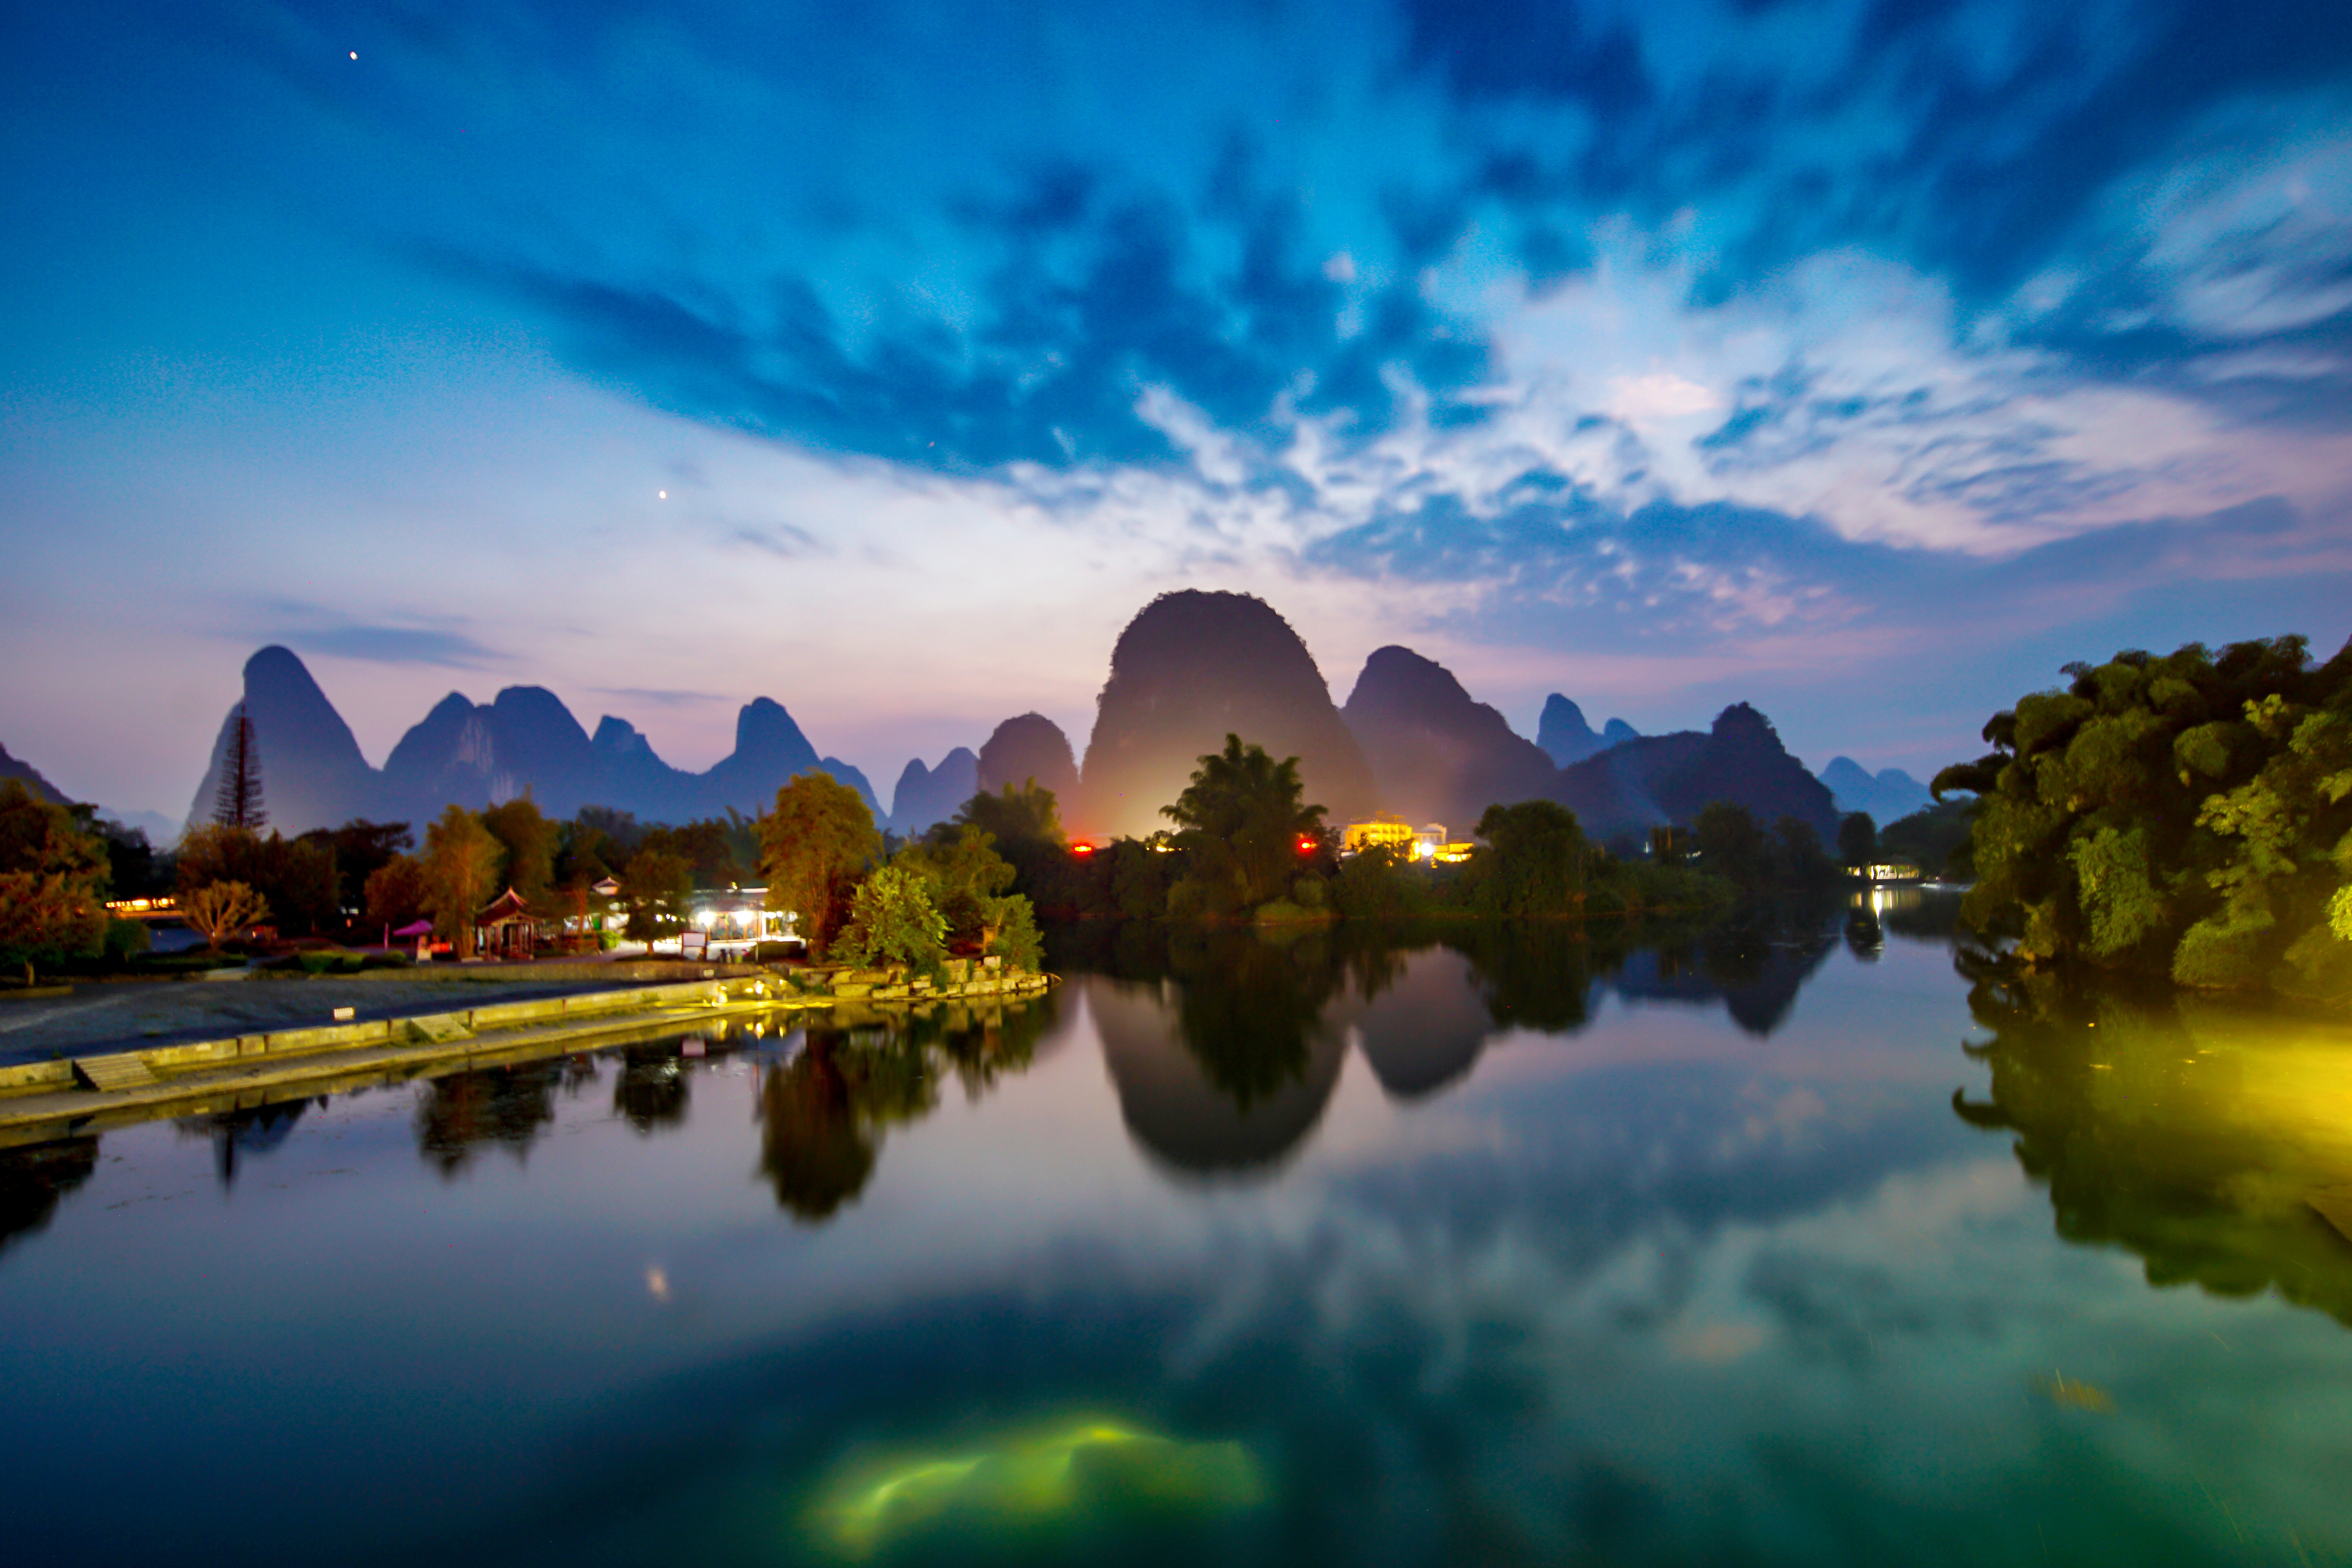 桂林最美的风景在这里,景点免费随手一拍就是一张明信片